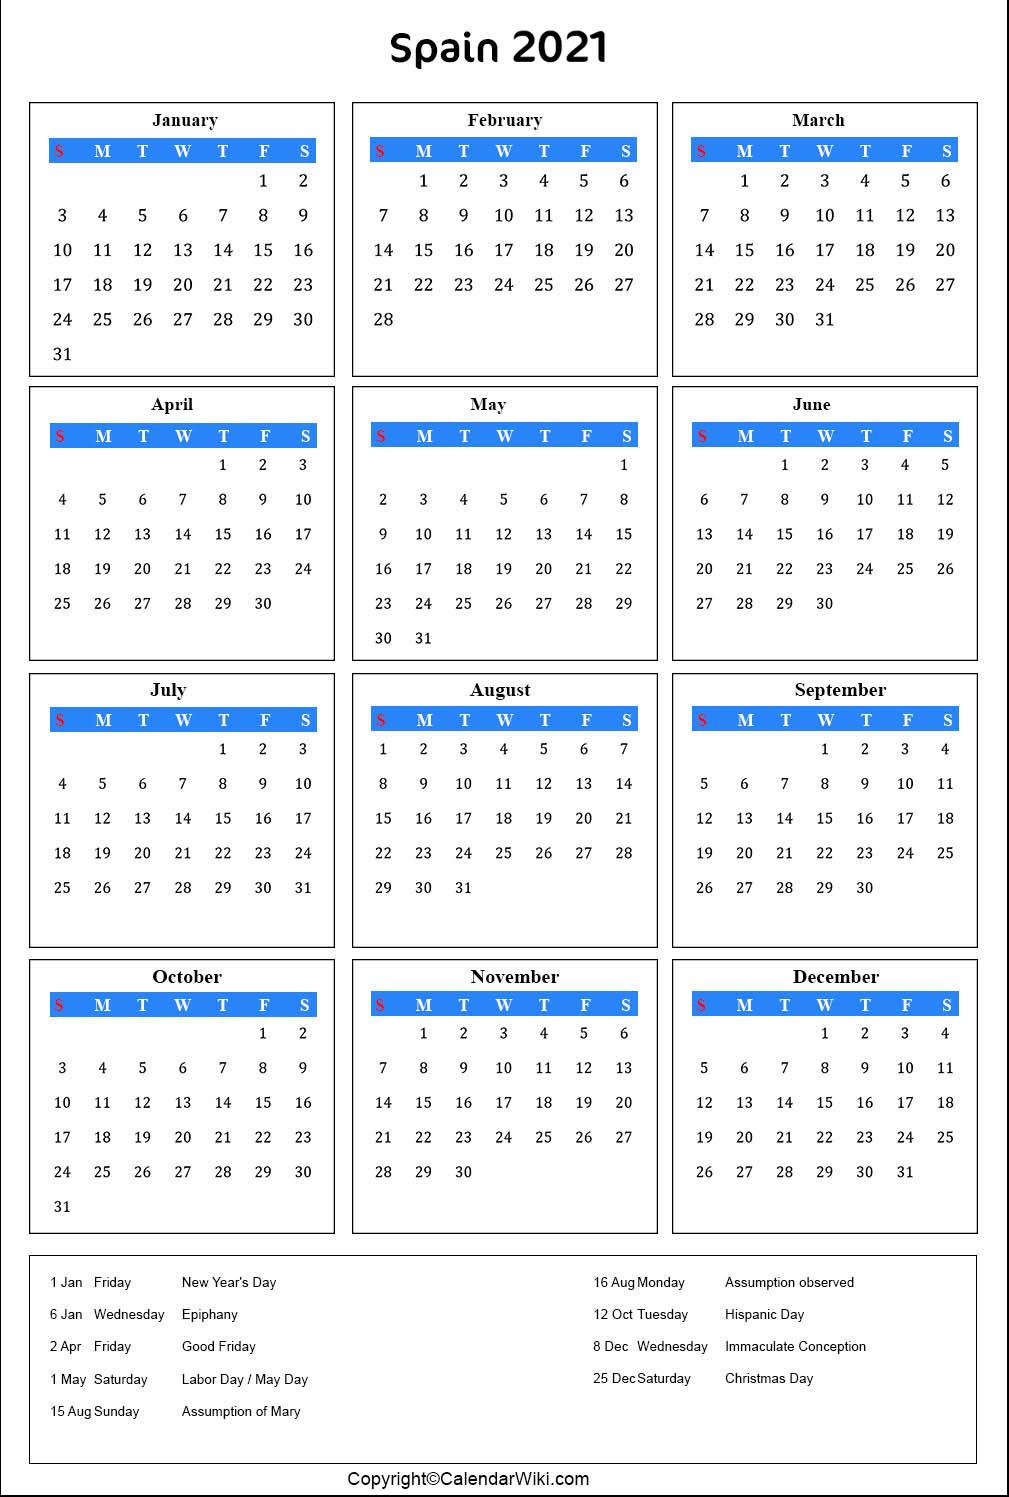 Spain Calendar 2021